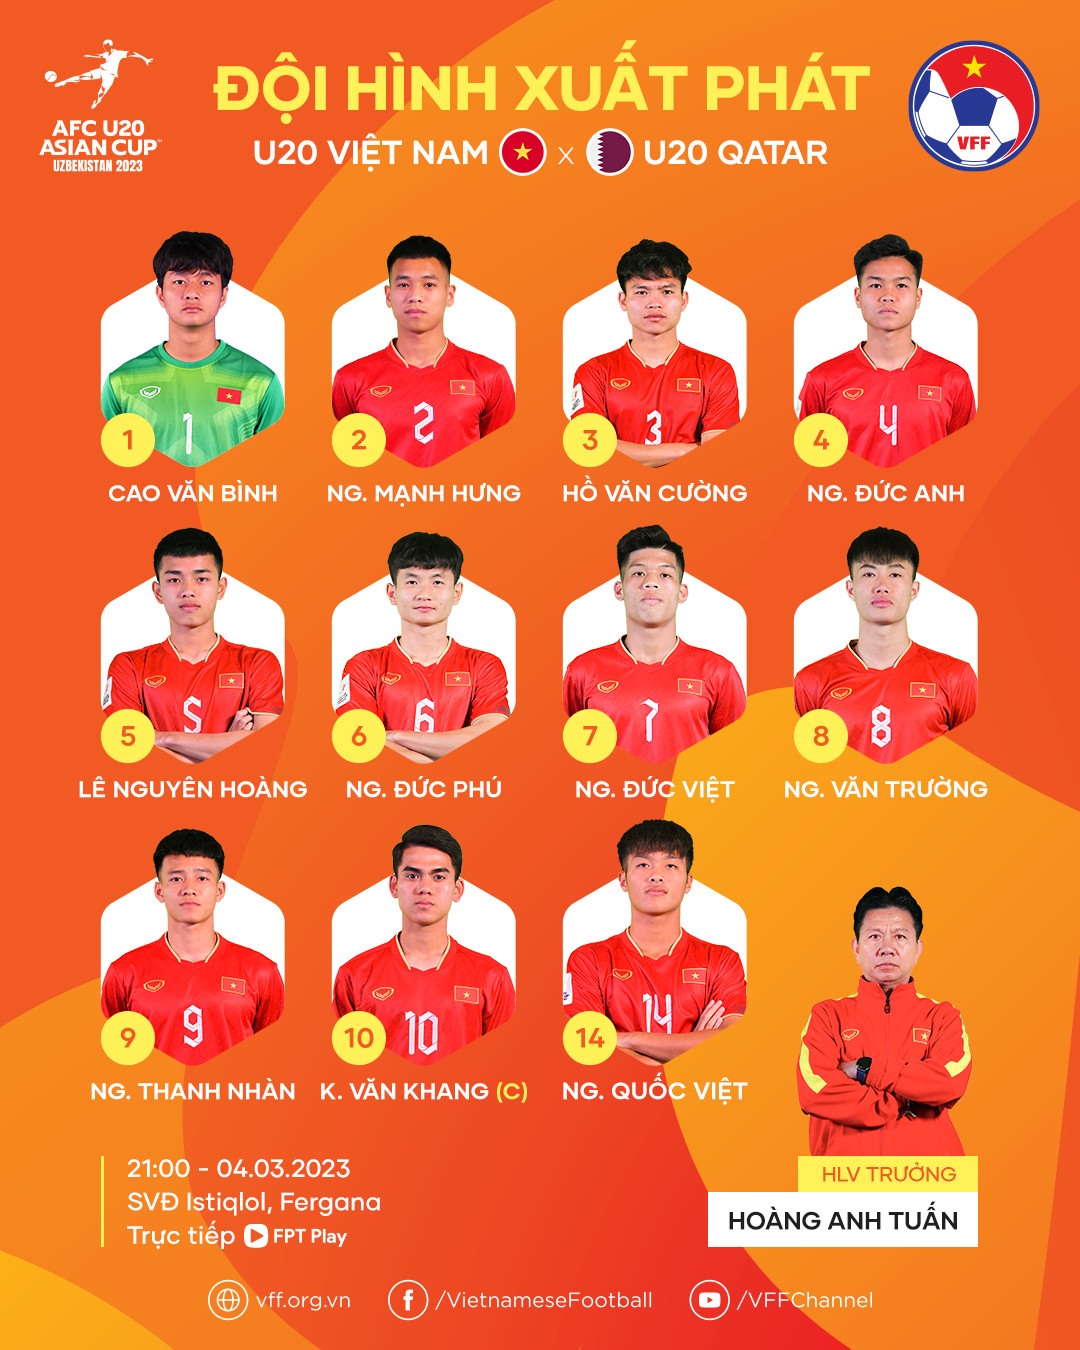 Đội hình xuất phát U20 Việt Nam. Ảnh: VFF